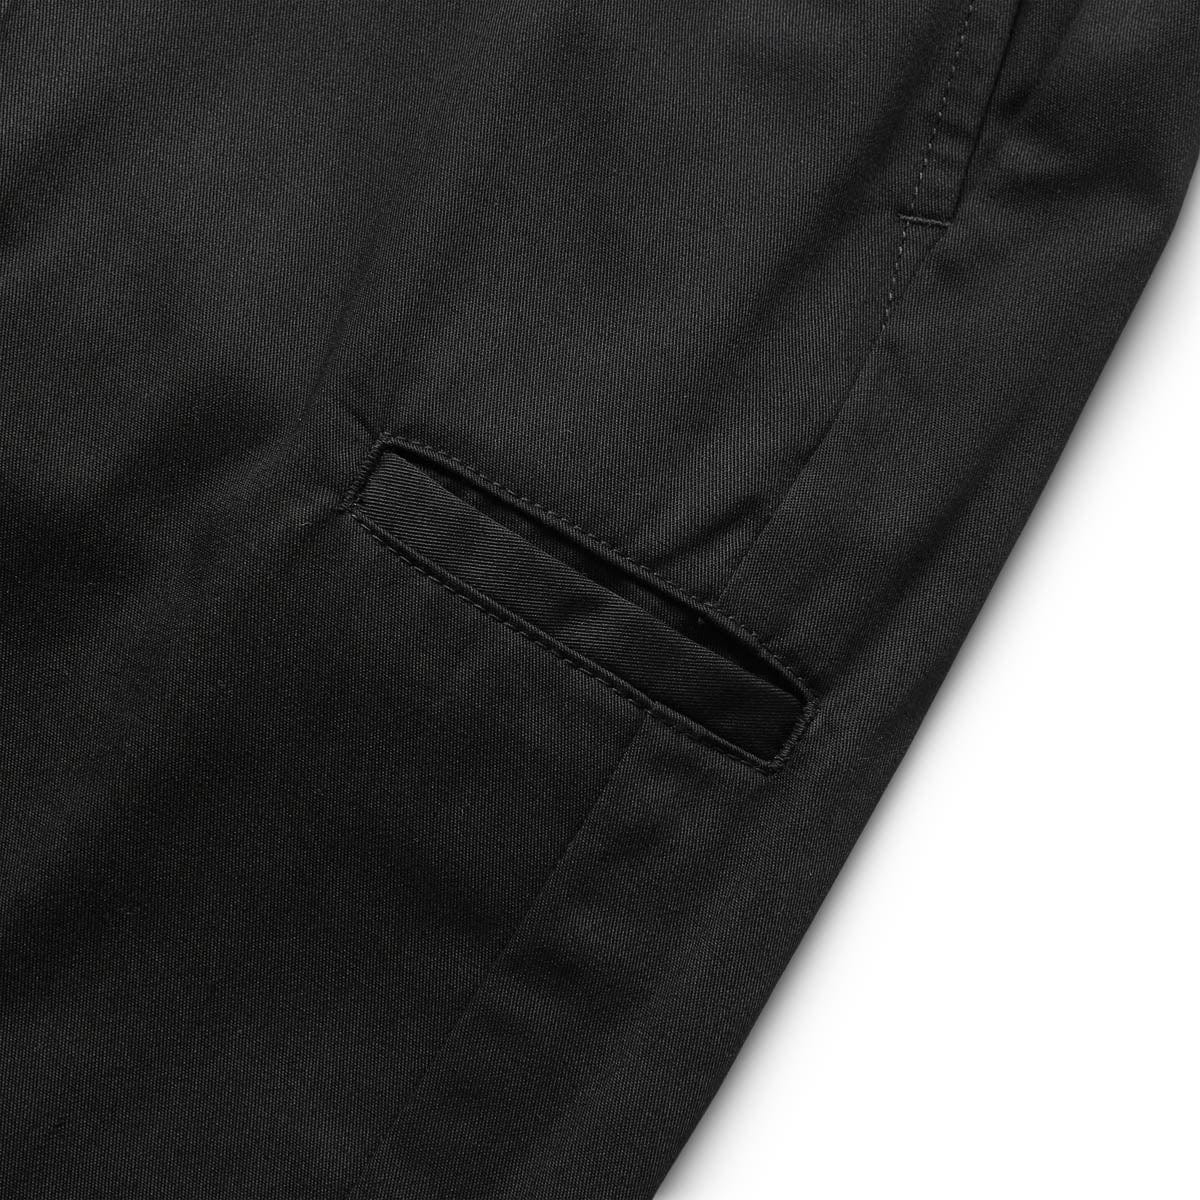 UC1C4509  Hermès pre-owned belted knee-length dress - 1 PANTS BLACK -  SlocogShops